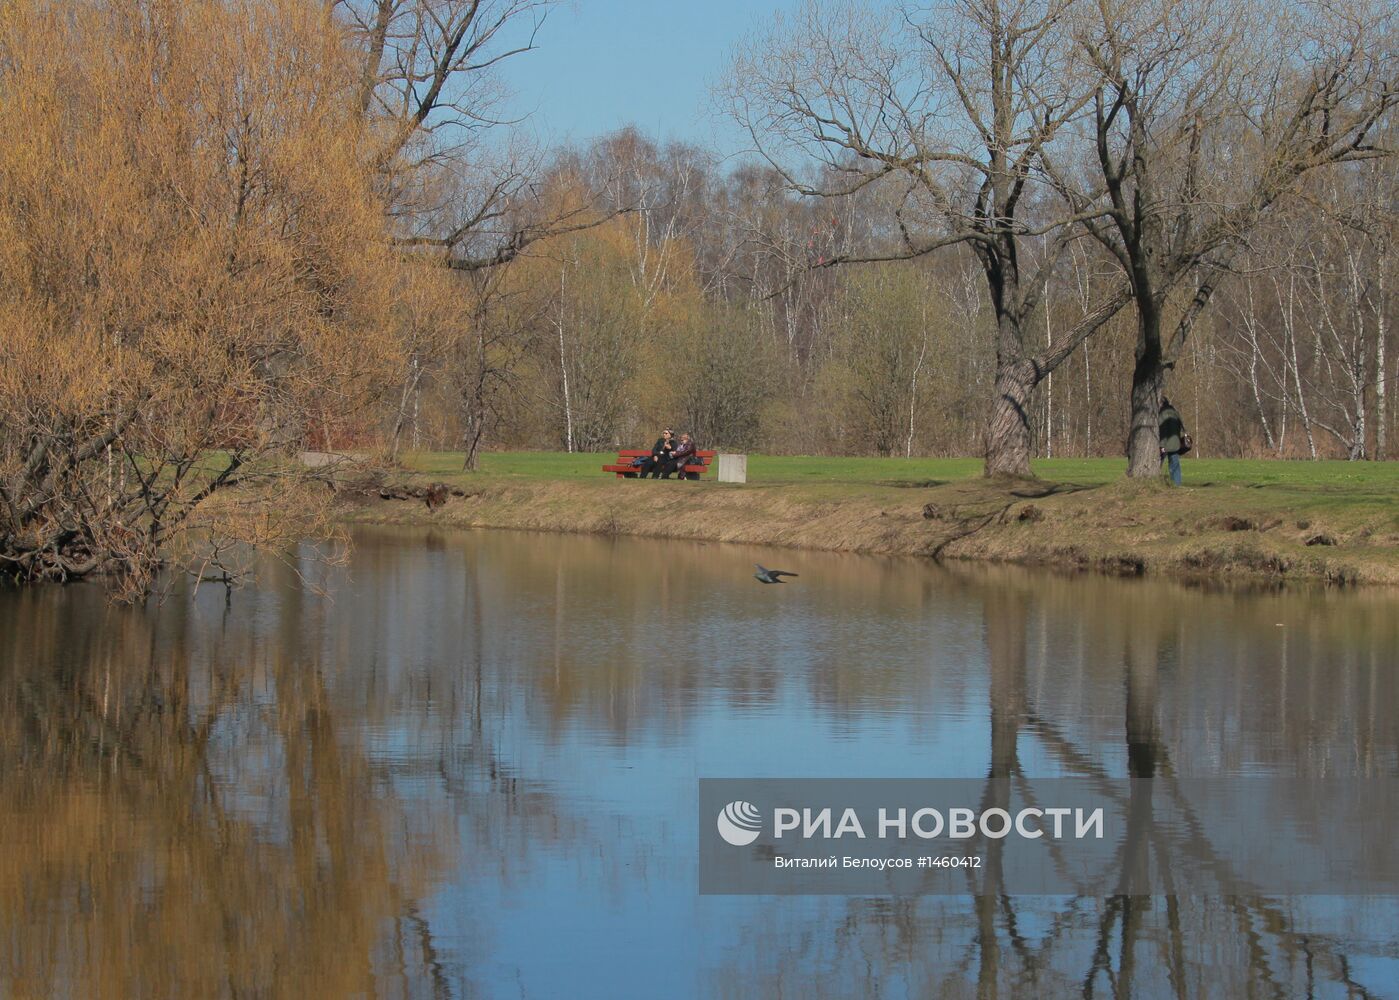 Долгожданная весна в Москве